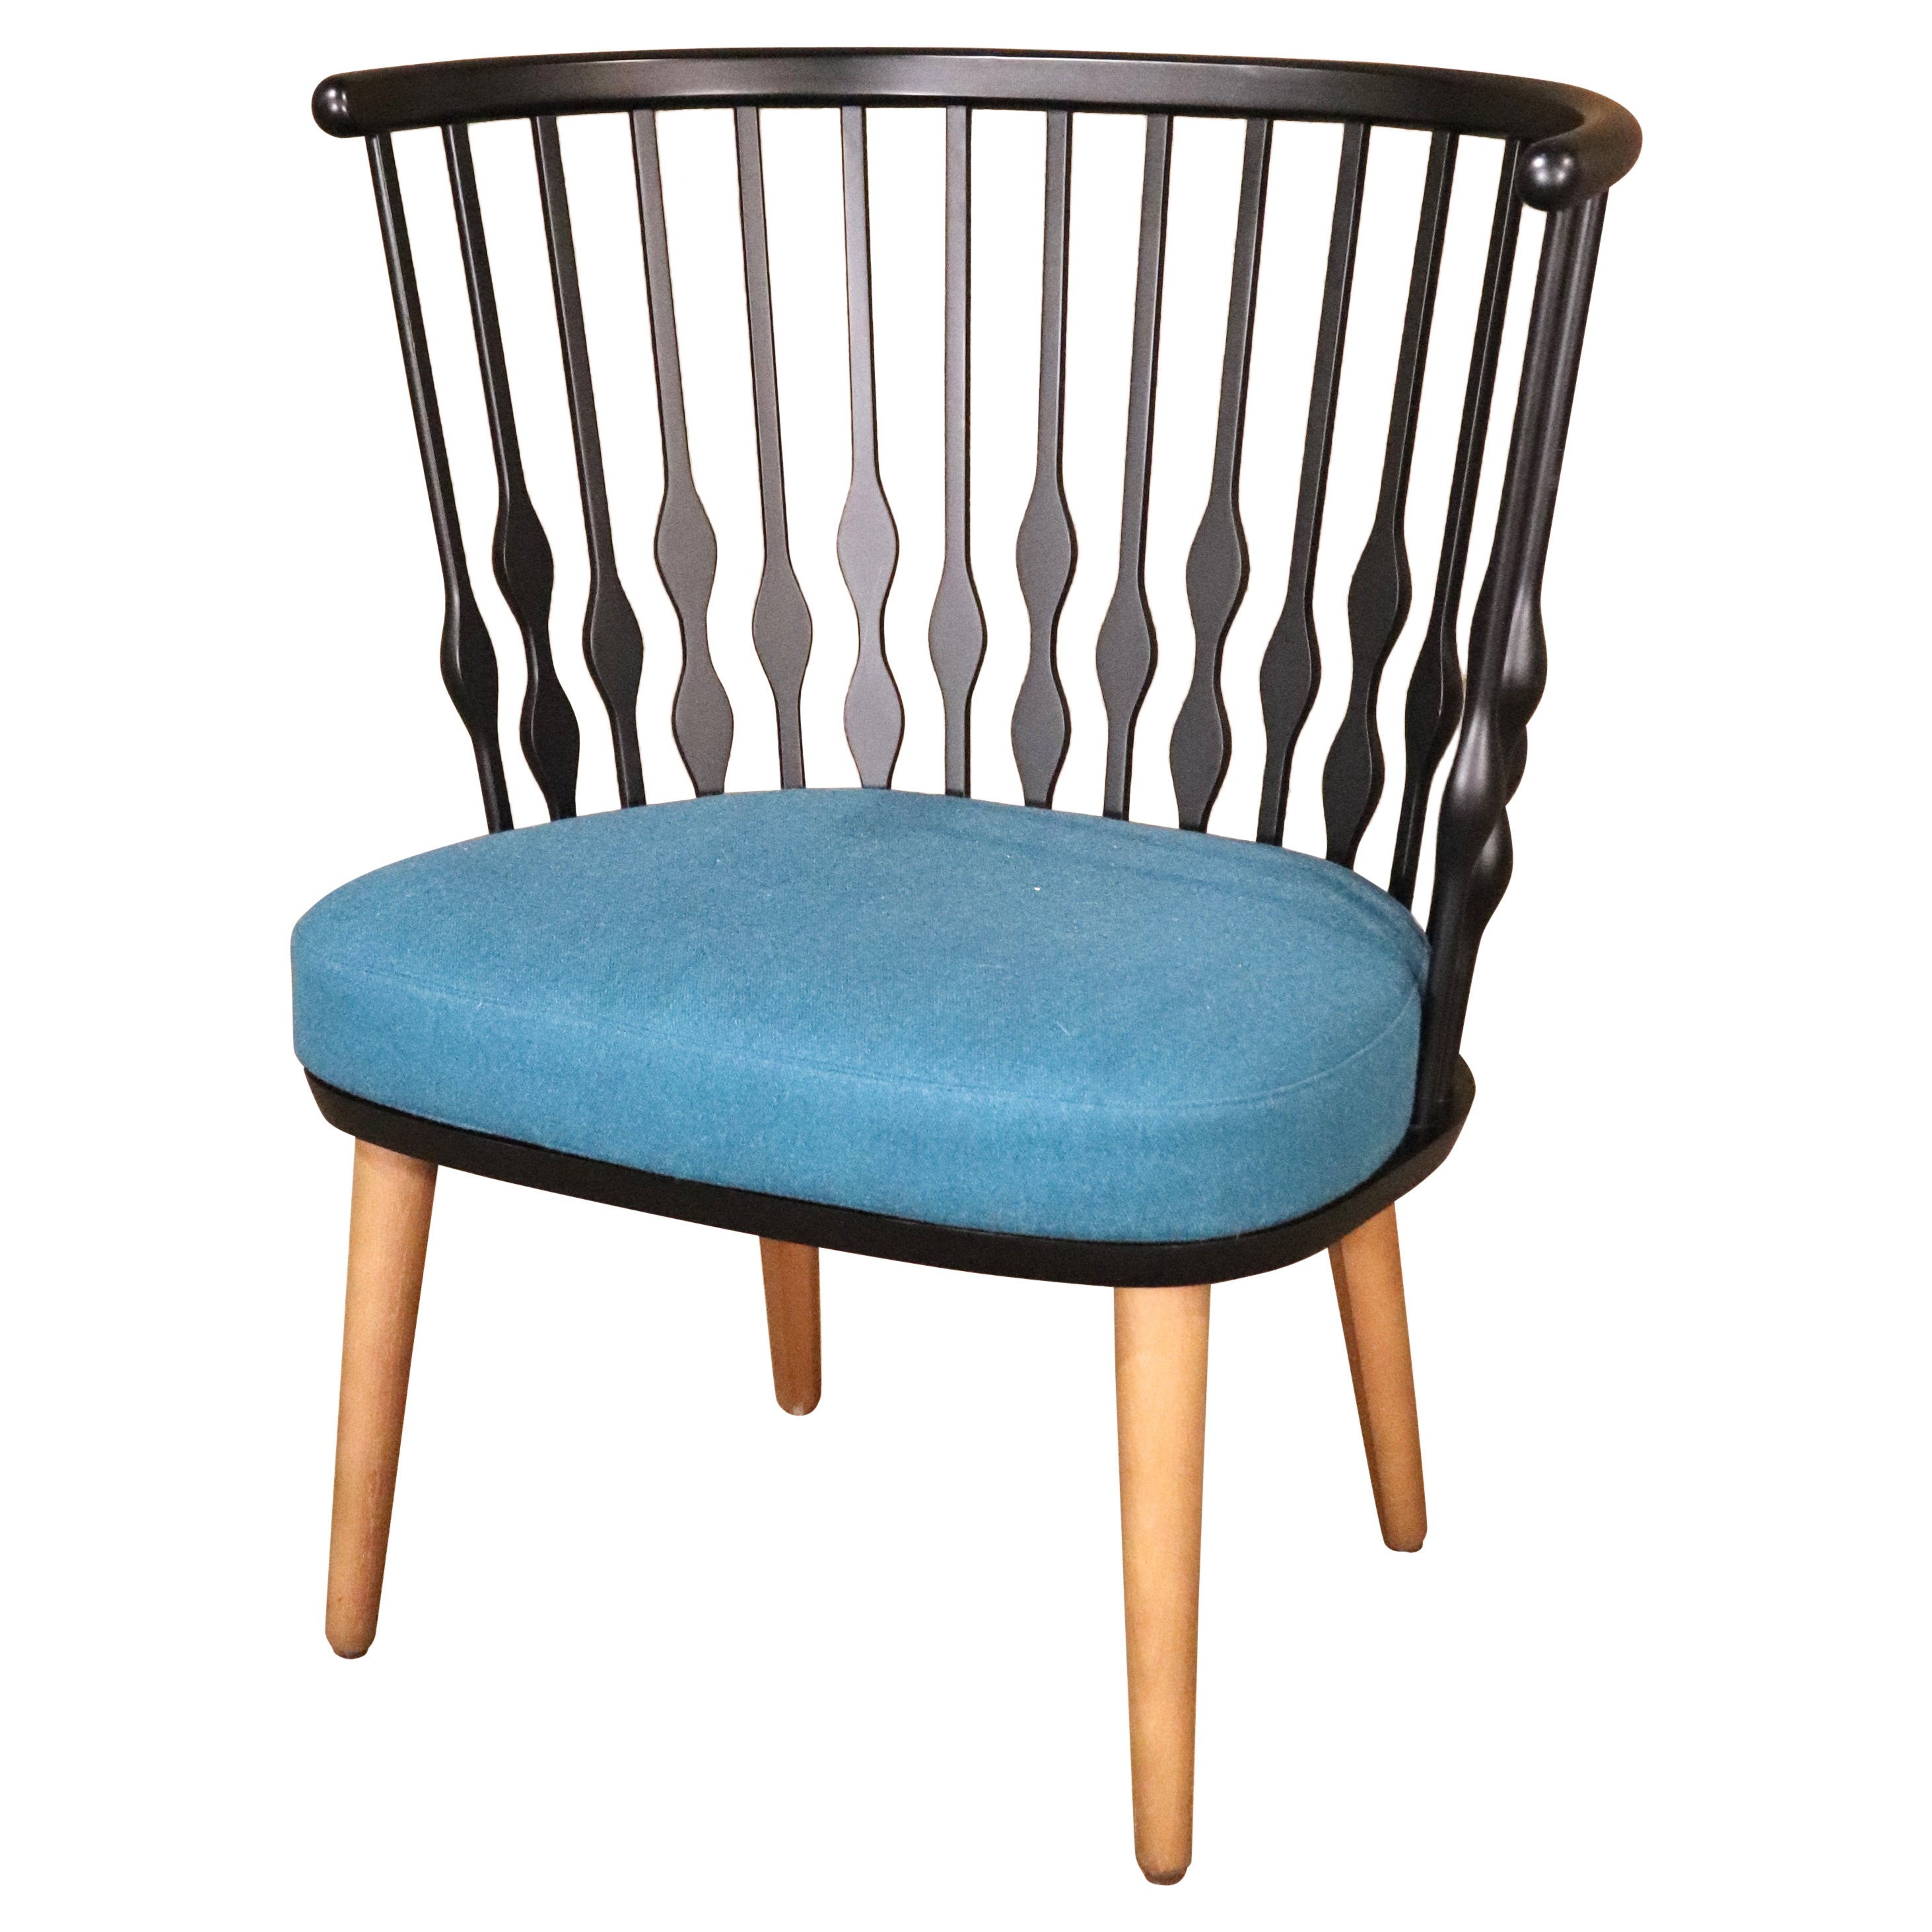 Patricia Urquiola Designed 'Nub' Chair